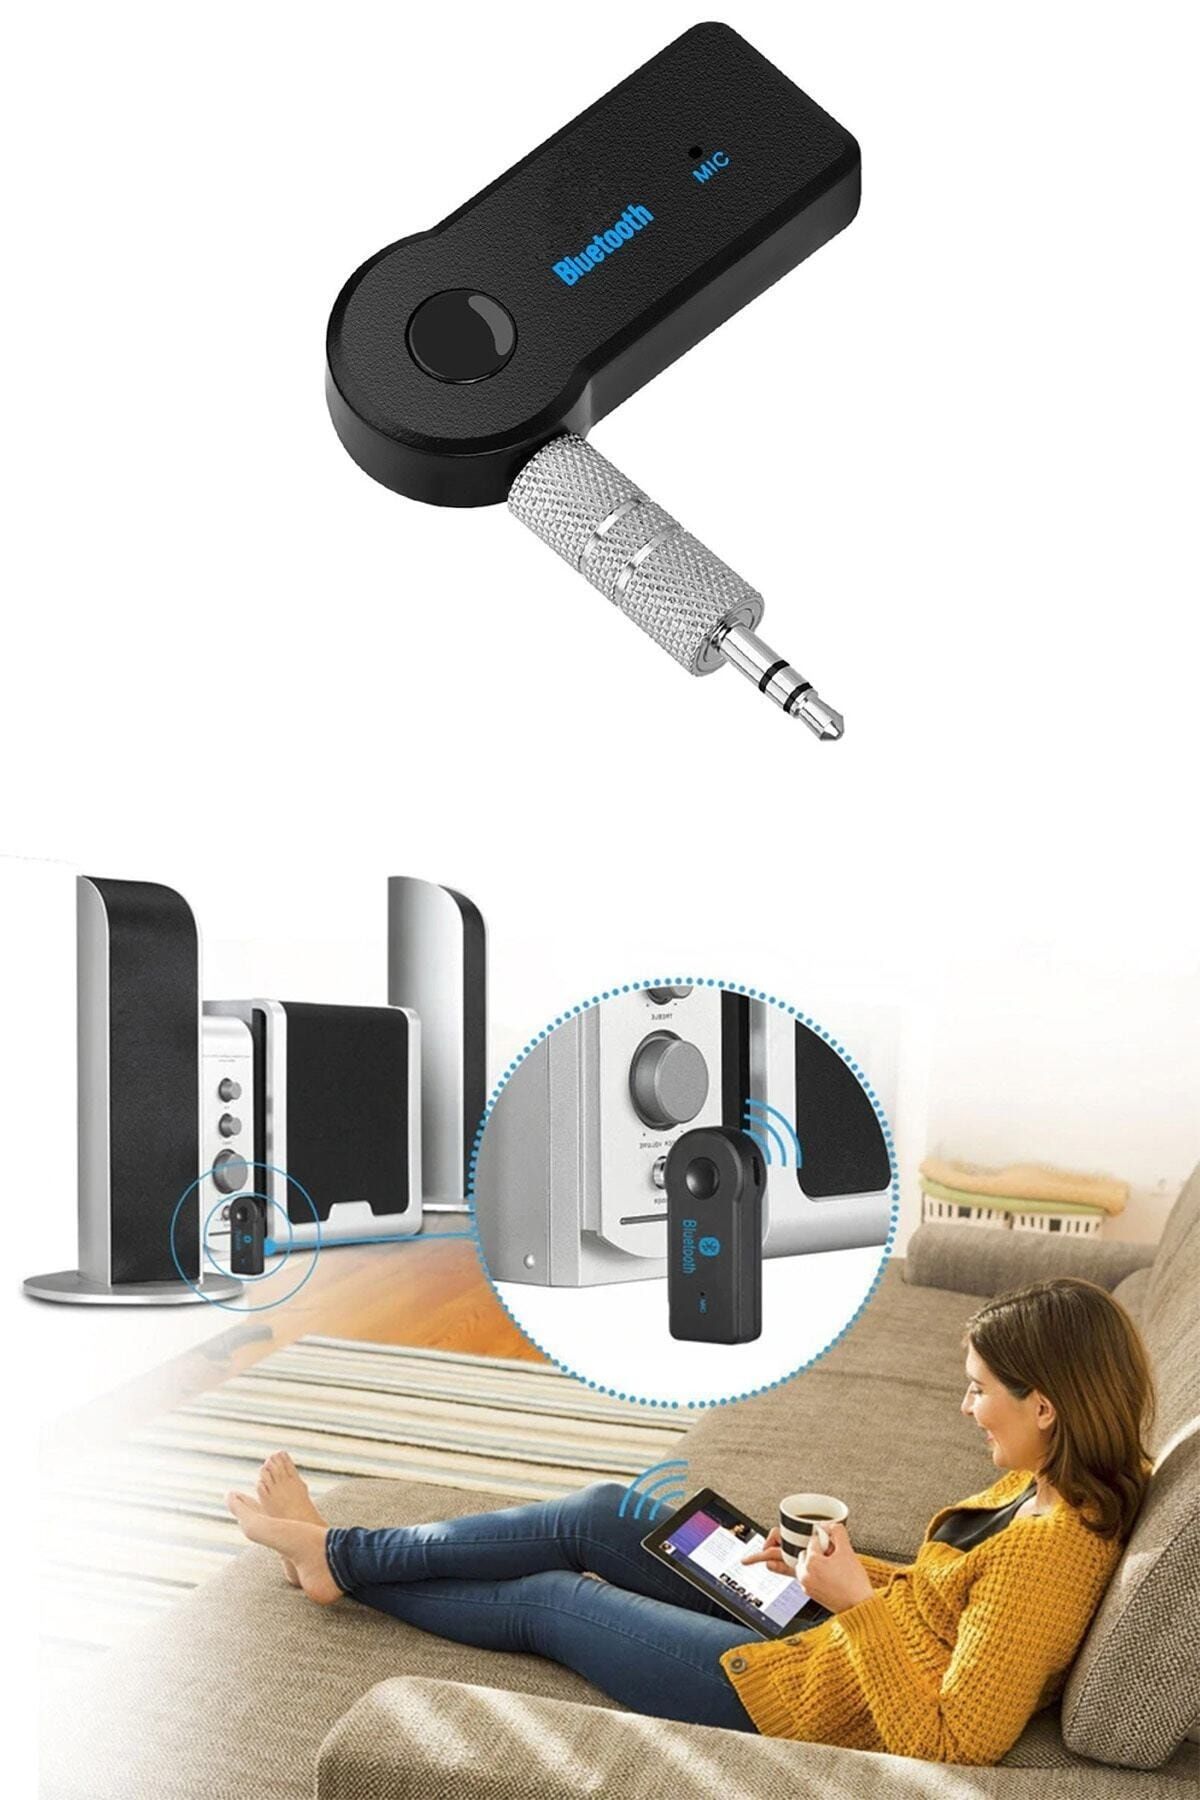 Monako Limited Edition Cep Telefonunuzdan Evdeki Teyp/Radyo/Hoparlör/Müzik Setine kablosuz bağlantı için AUX Bluetooth Kit